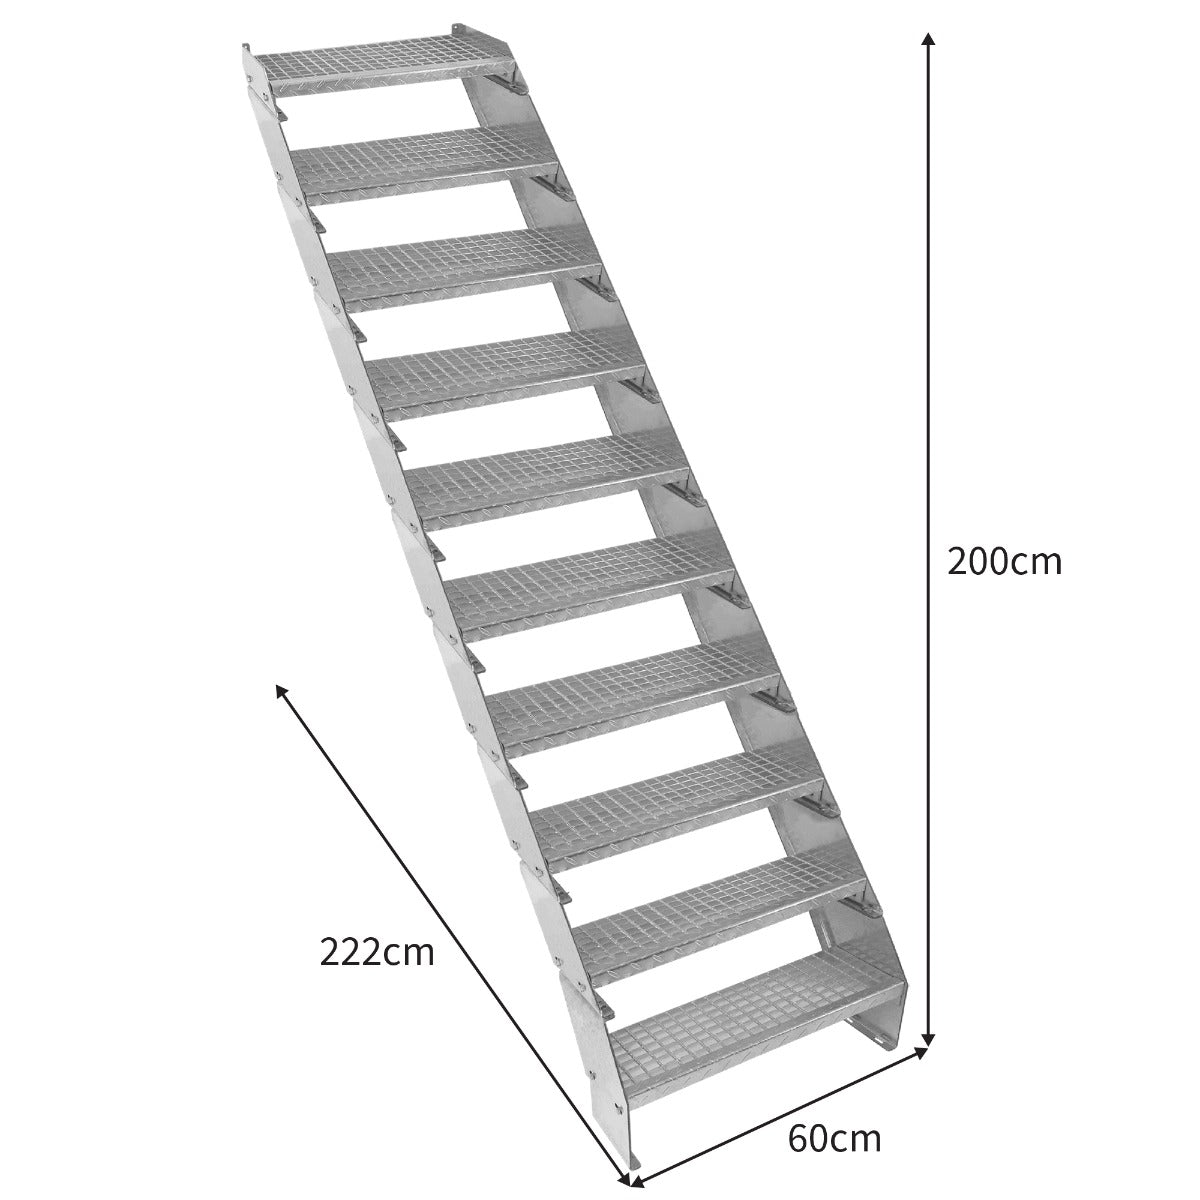 Escalera Galvanizada Ajustable de 10 Escalones– 600mm de Ancho